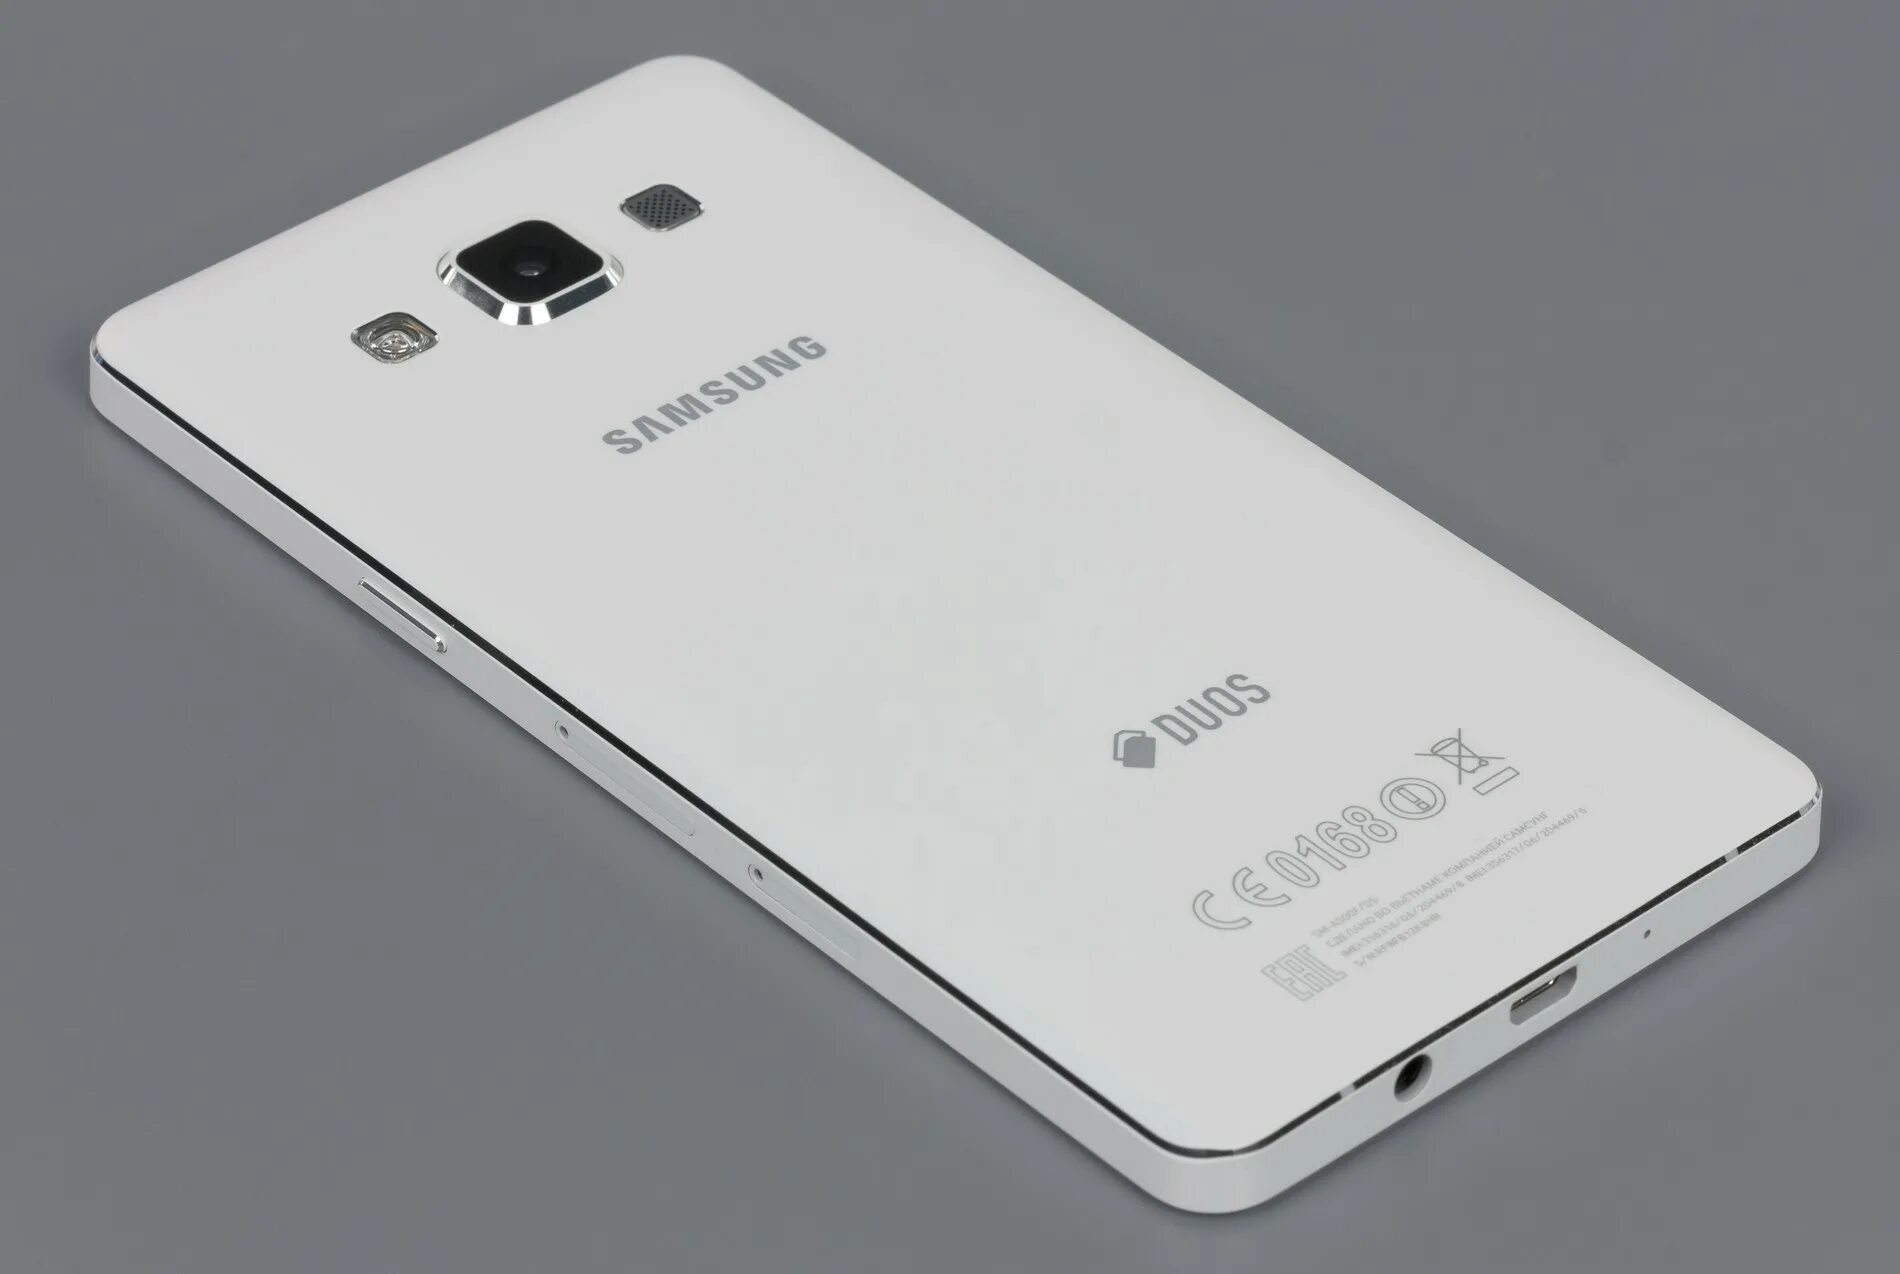 Samsung Galaxy a5 2015 White. Samsung Galaxy a5 белый 2015. Samsung Galaxy a5 2016 White. Samsung Galaxy a5 2015 Gold. Галакси а5 2016